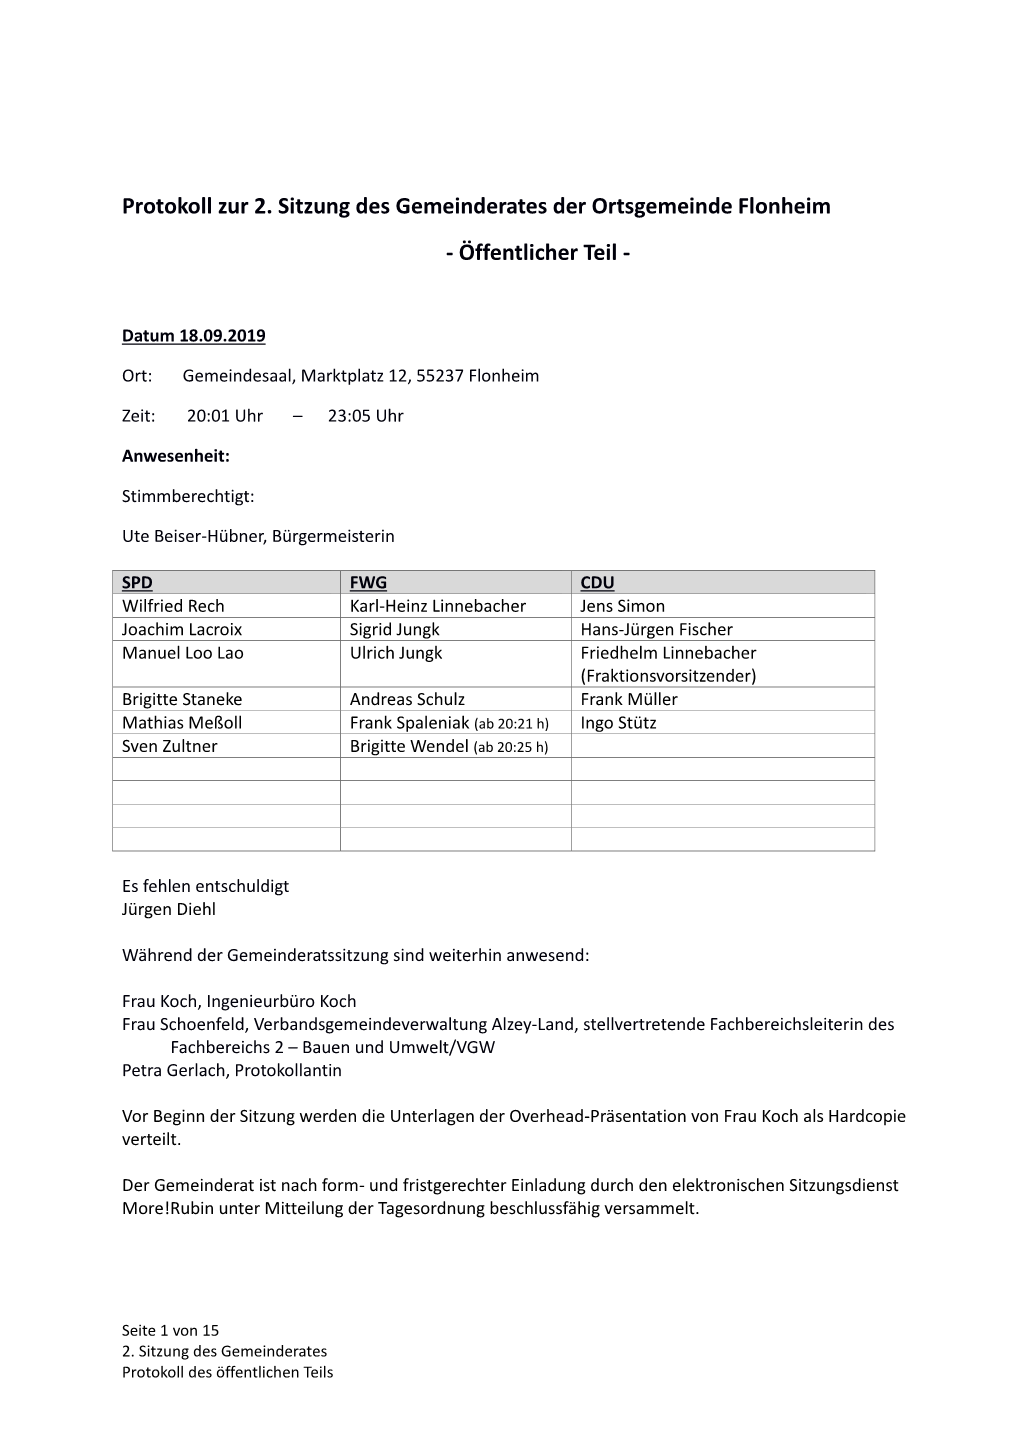 Protokoll Zur 2. Sitzung Des Gemeinderates Der Ortsgemeinde Flonheim - Öffentlicher Teil